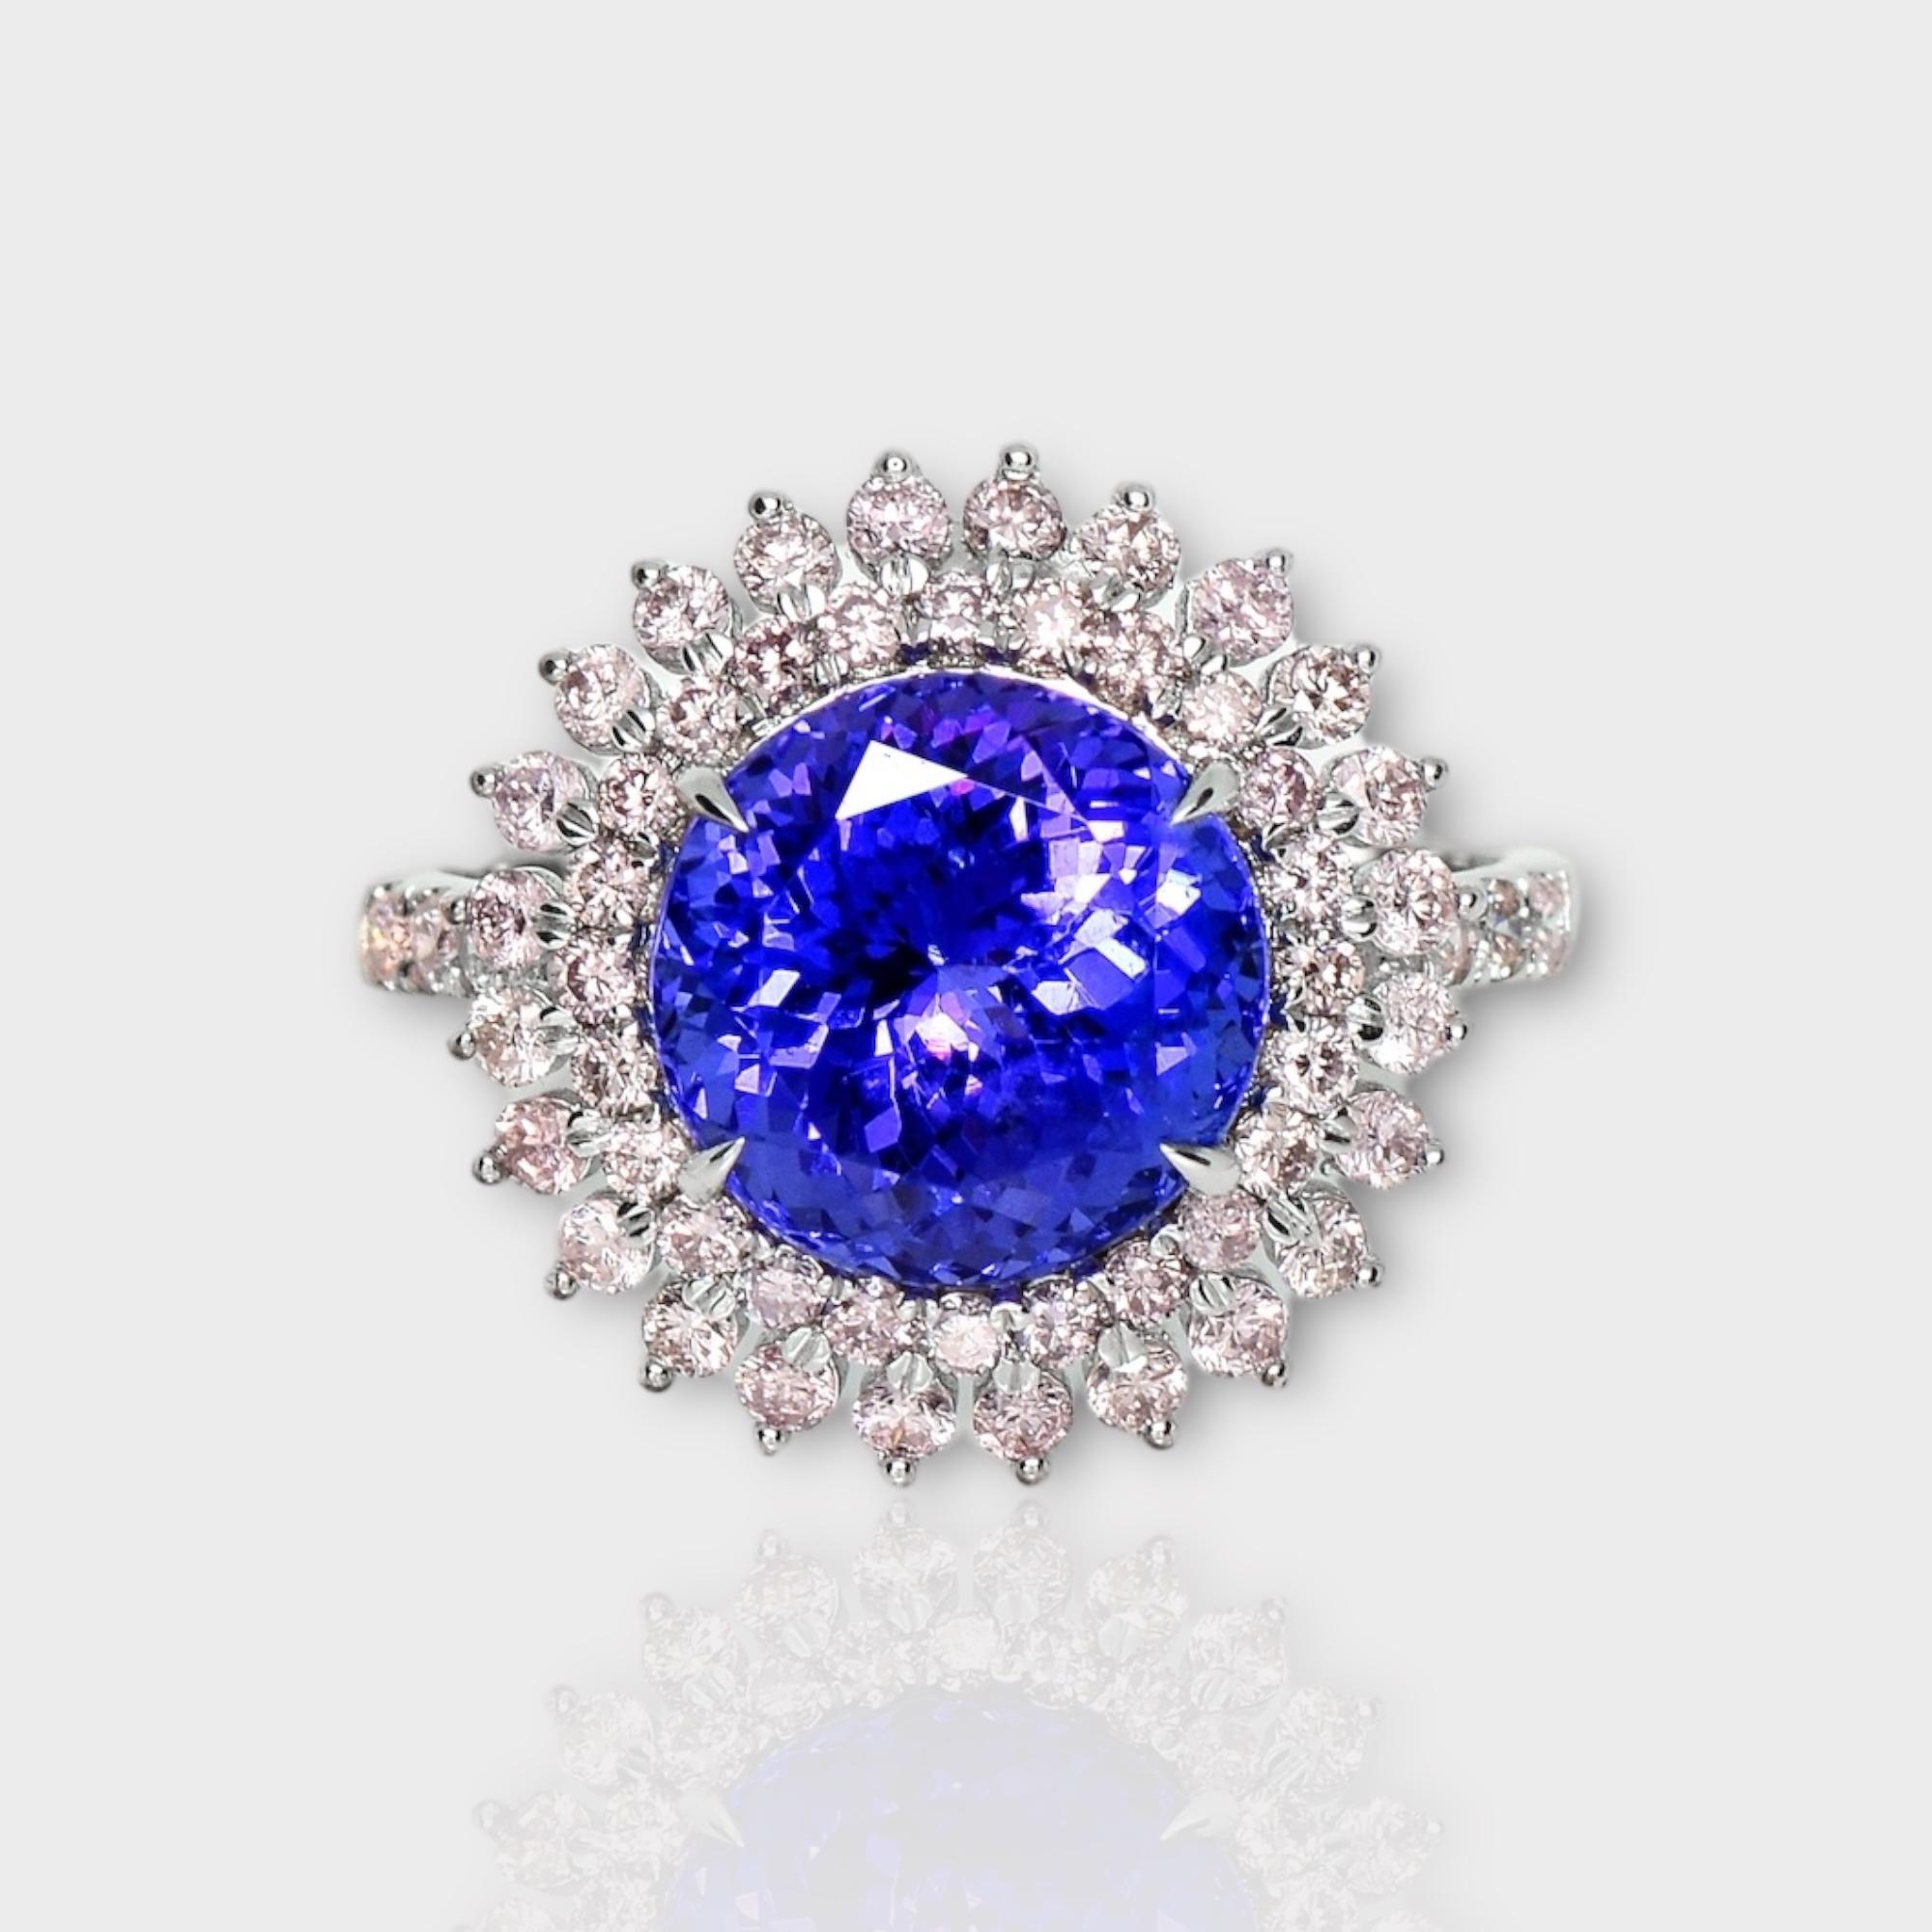 *IGI 14K 4.66 ct Tansanit&Rosa Diamant Antiker Art Deco Stil Verlobungsring*
Natürlicher, intensiv bläulich-violetter Tansanit als Mittelstein mit einem Gewicht von 4,66 ct, umgeben von natürlichen rosafarbenen Diamanten mit einem Gewicht von 0,77